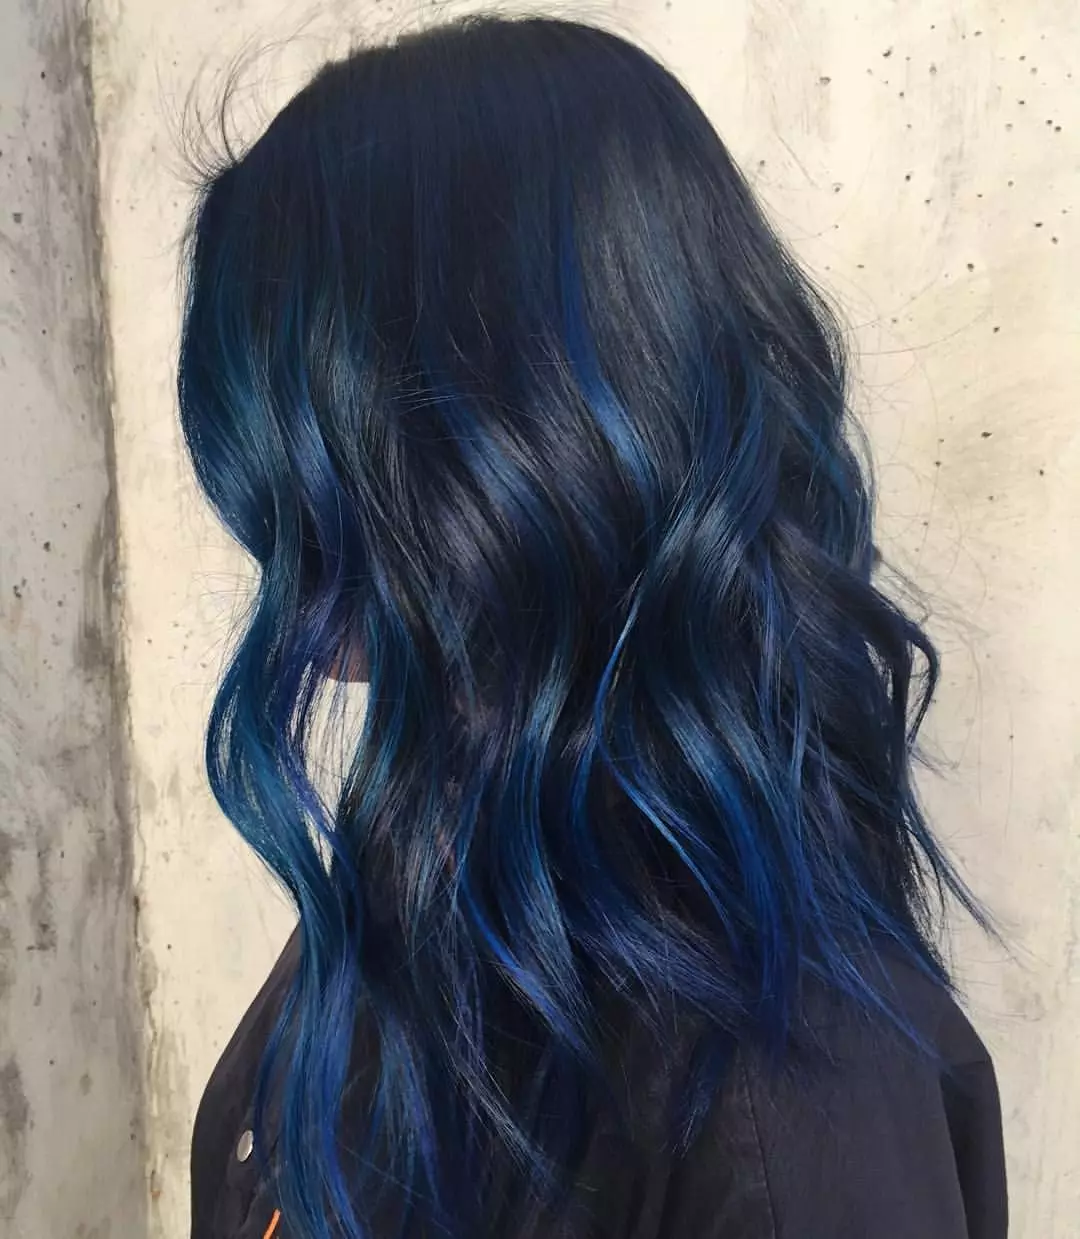 Plava boja kose: Pregled otpornih boja kose s plavim tampom, od svijetlo plave do crne i plave nijanse 5402_50